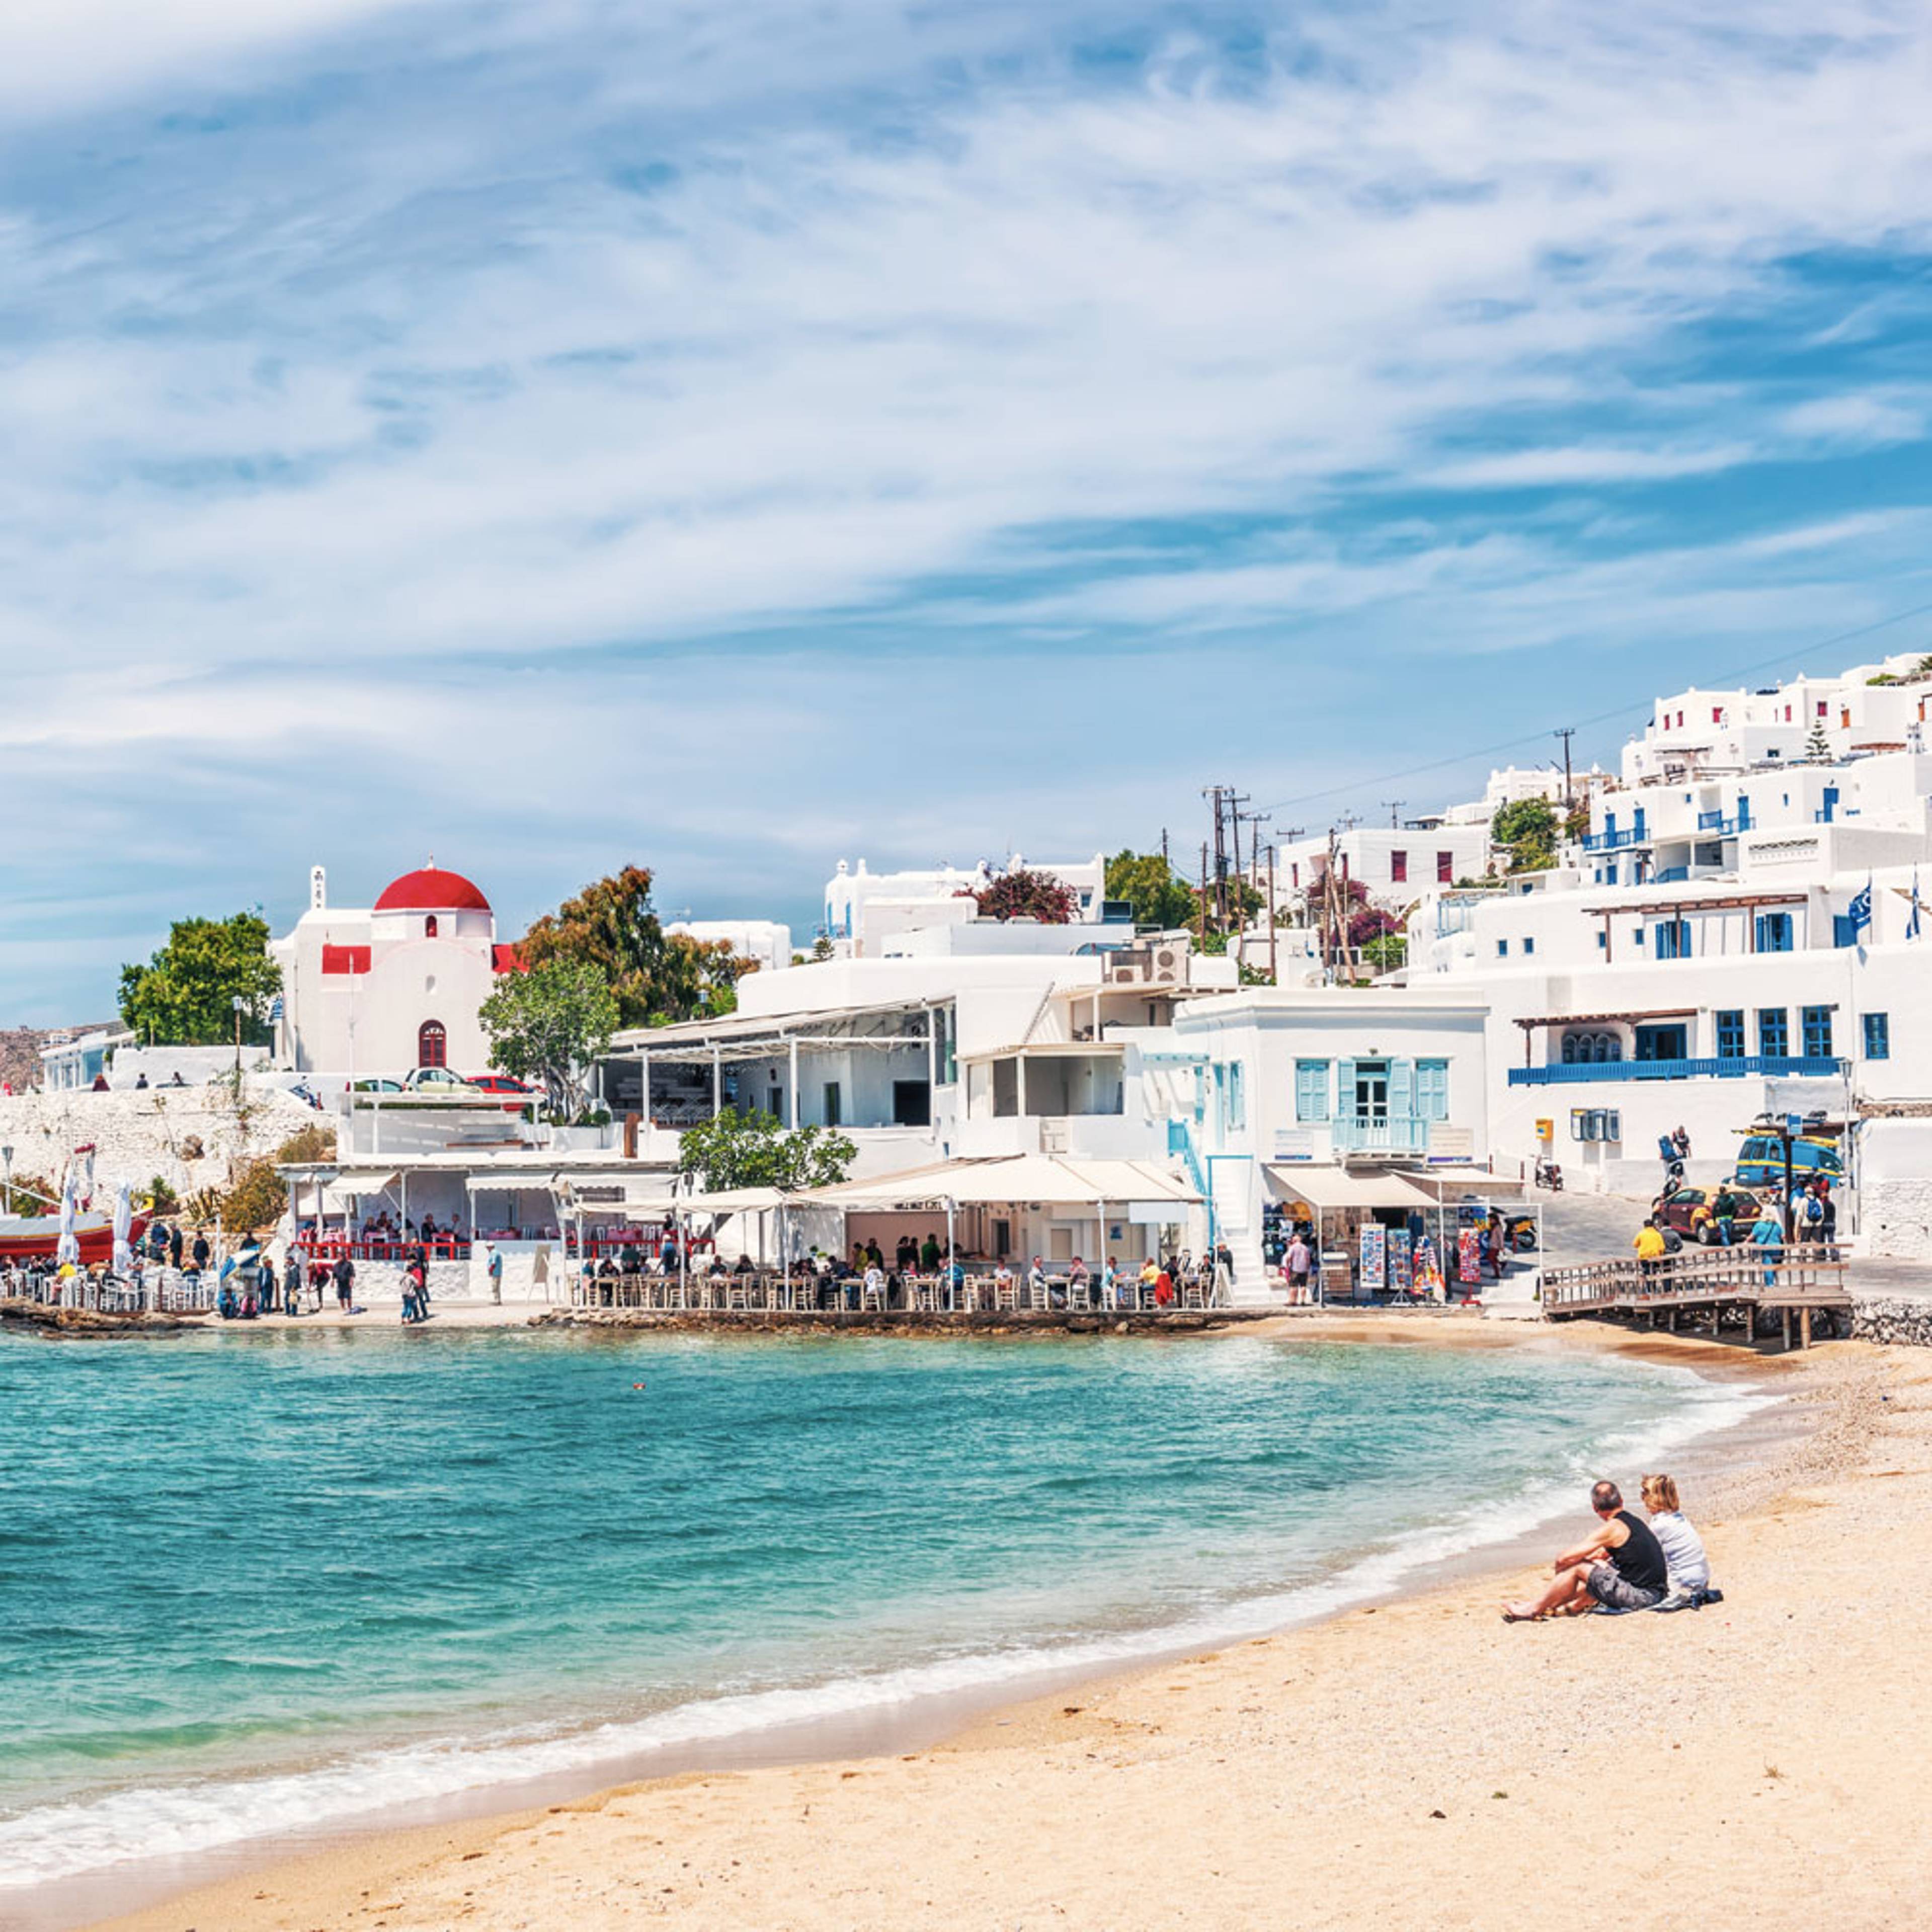 Le tue vacanze al mare in Grecia  su misura